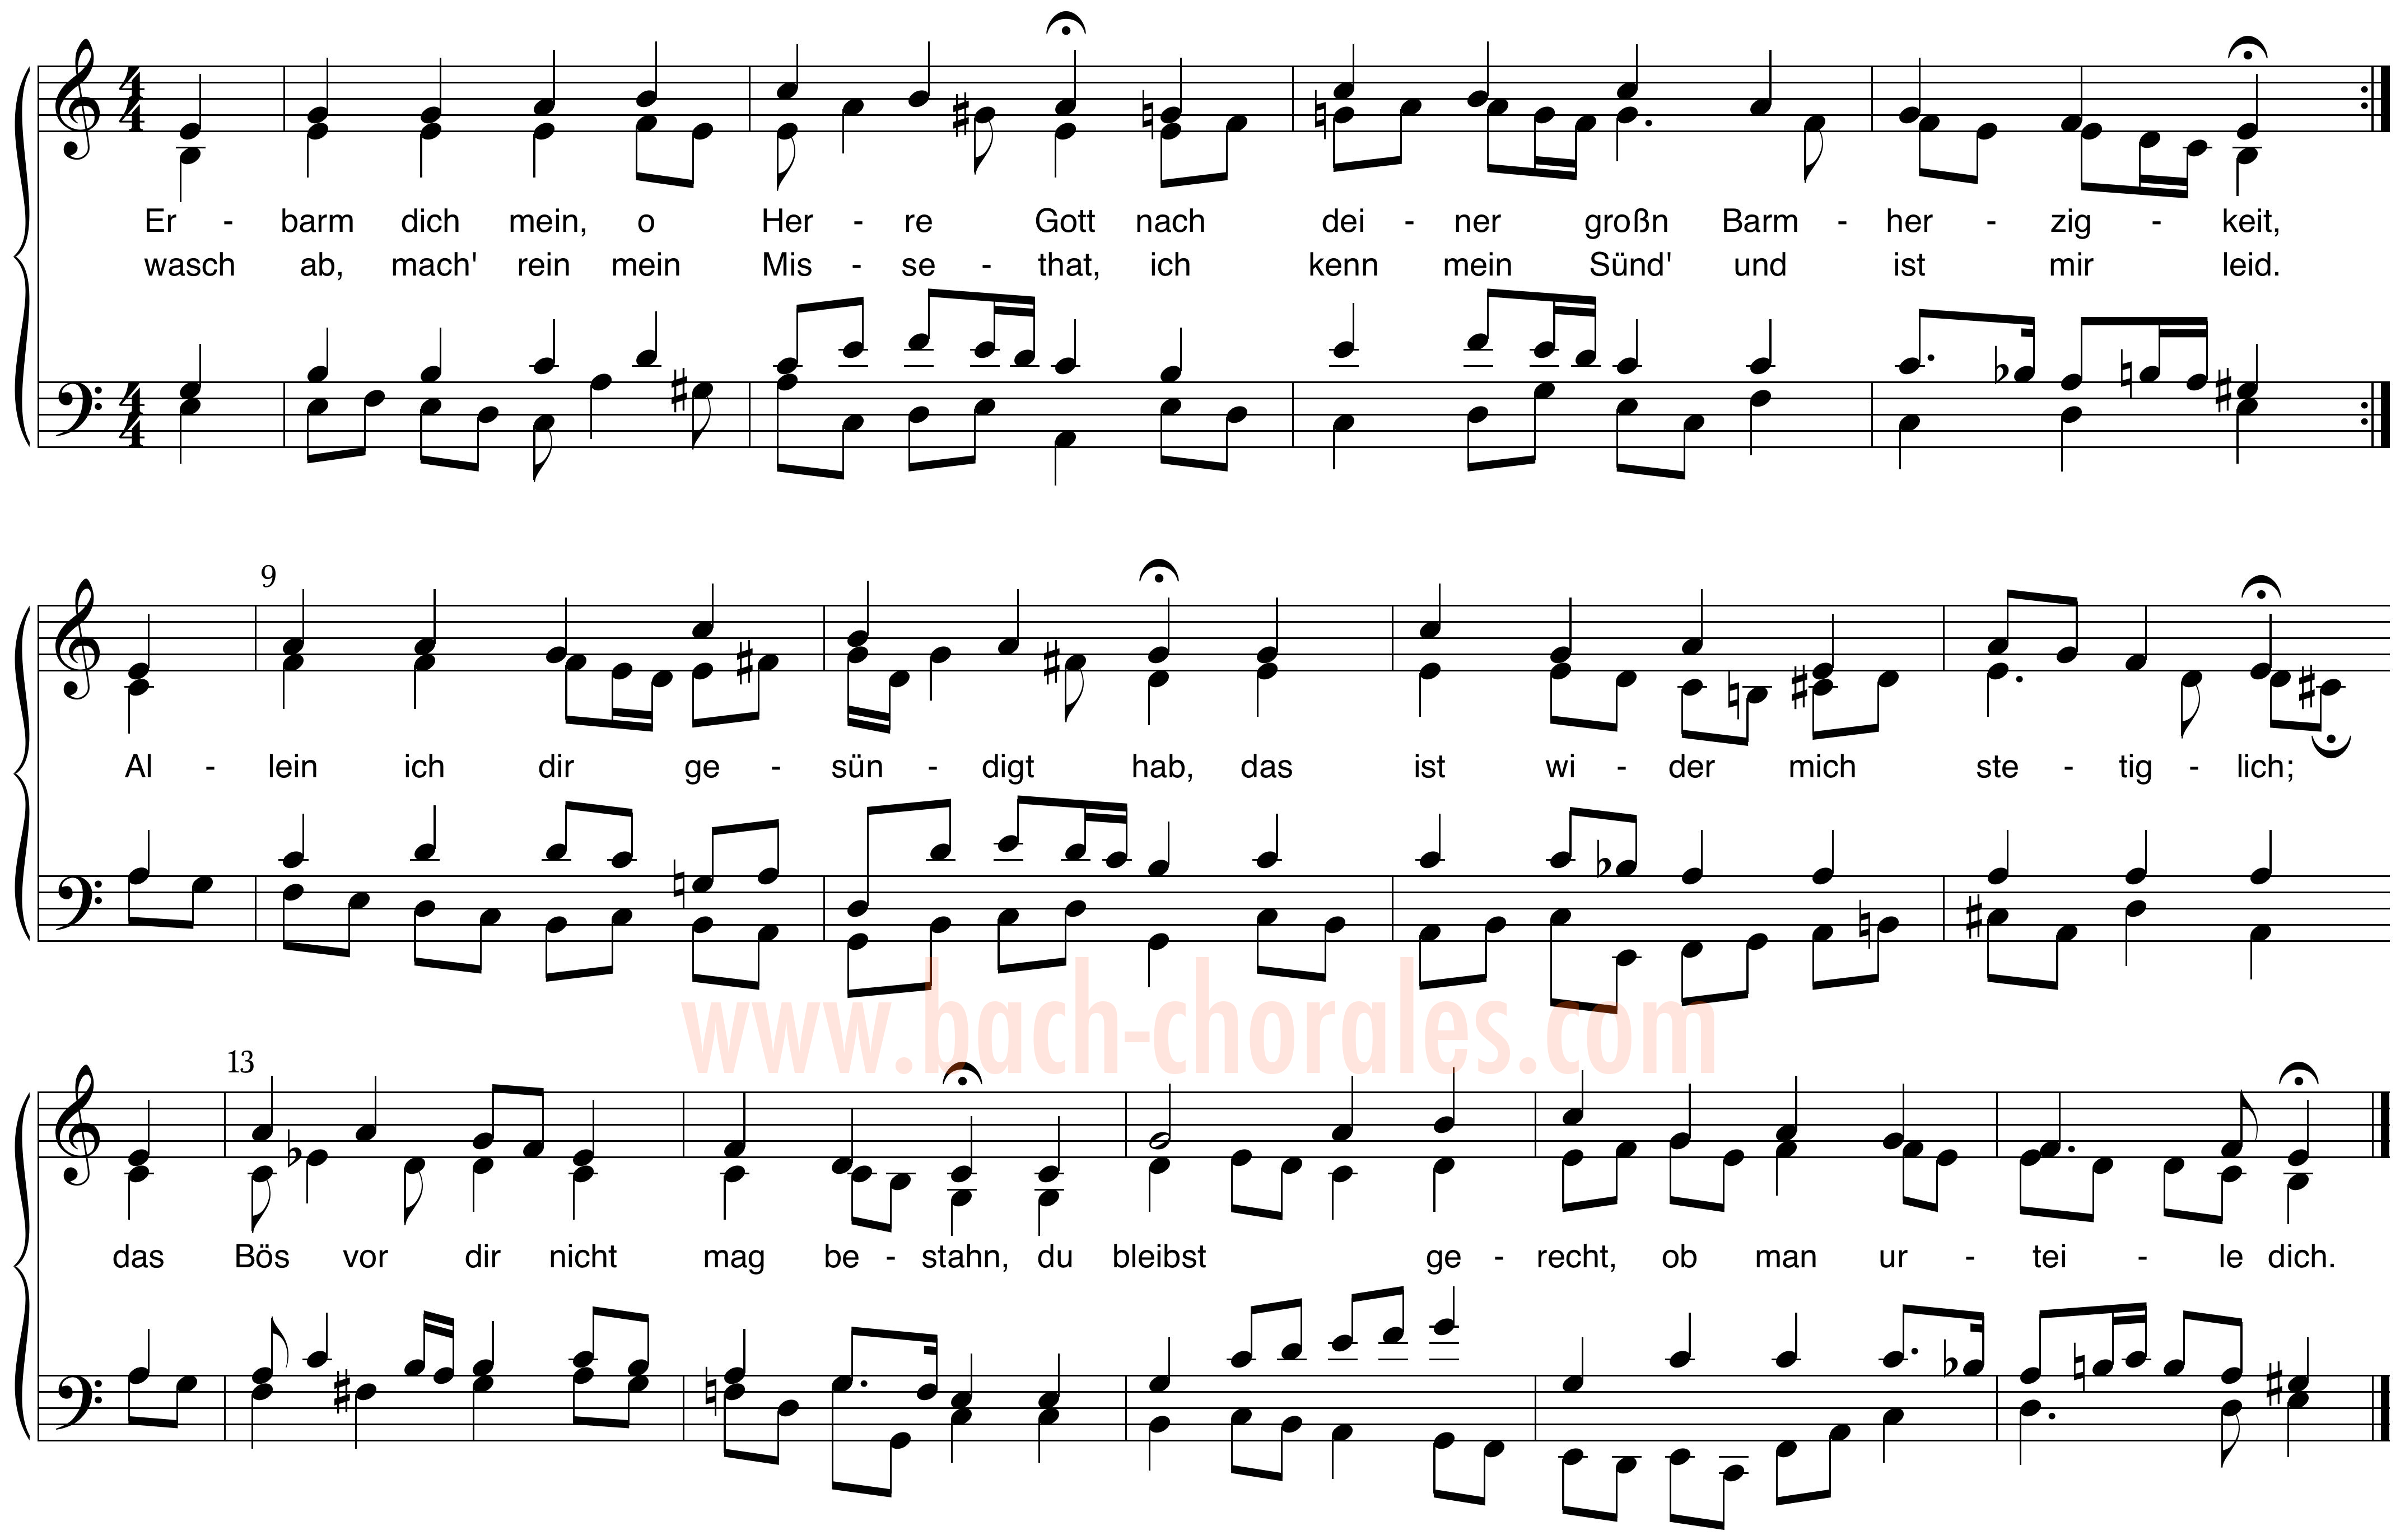 notenbeeld BWV 305 op https://www.bach-chorales.com/